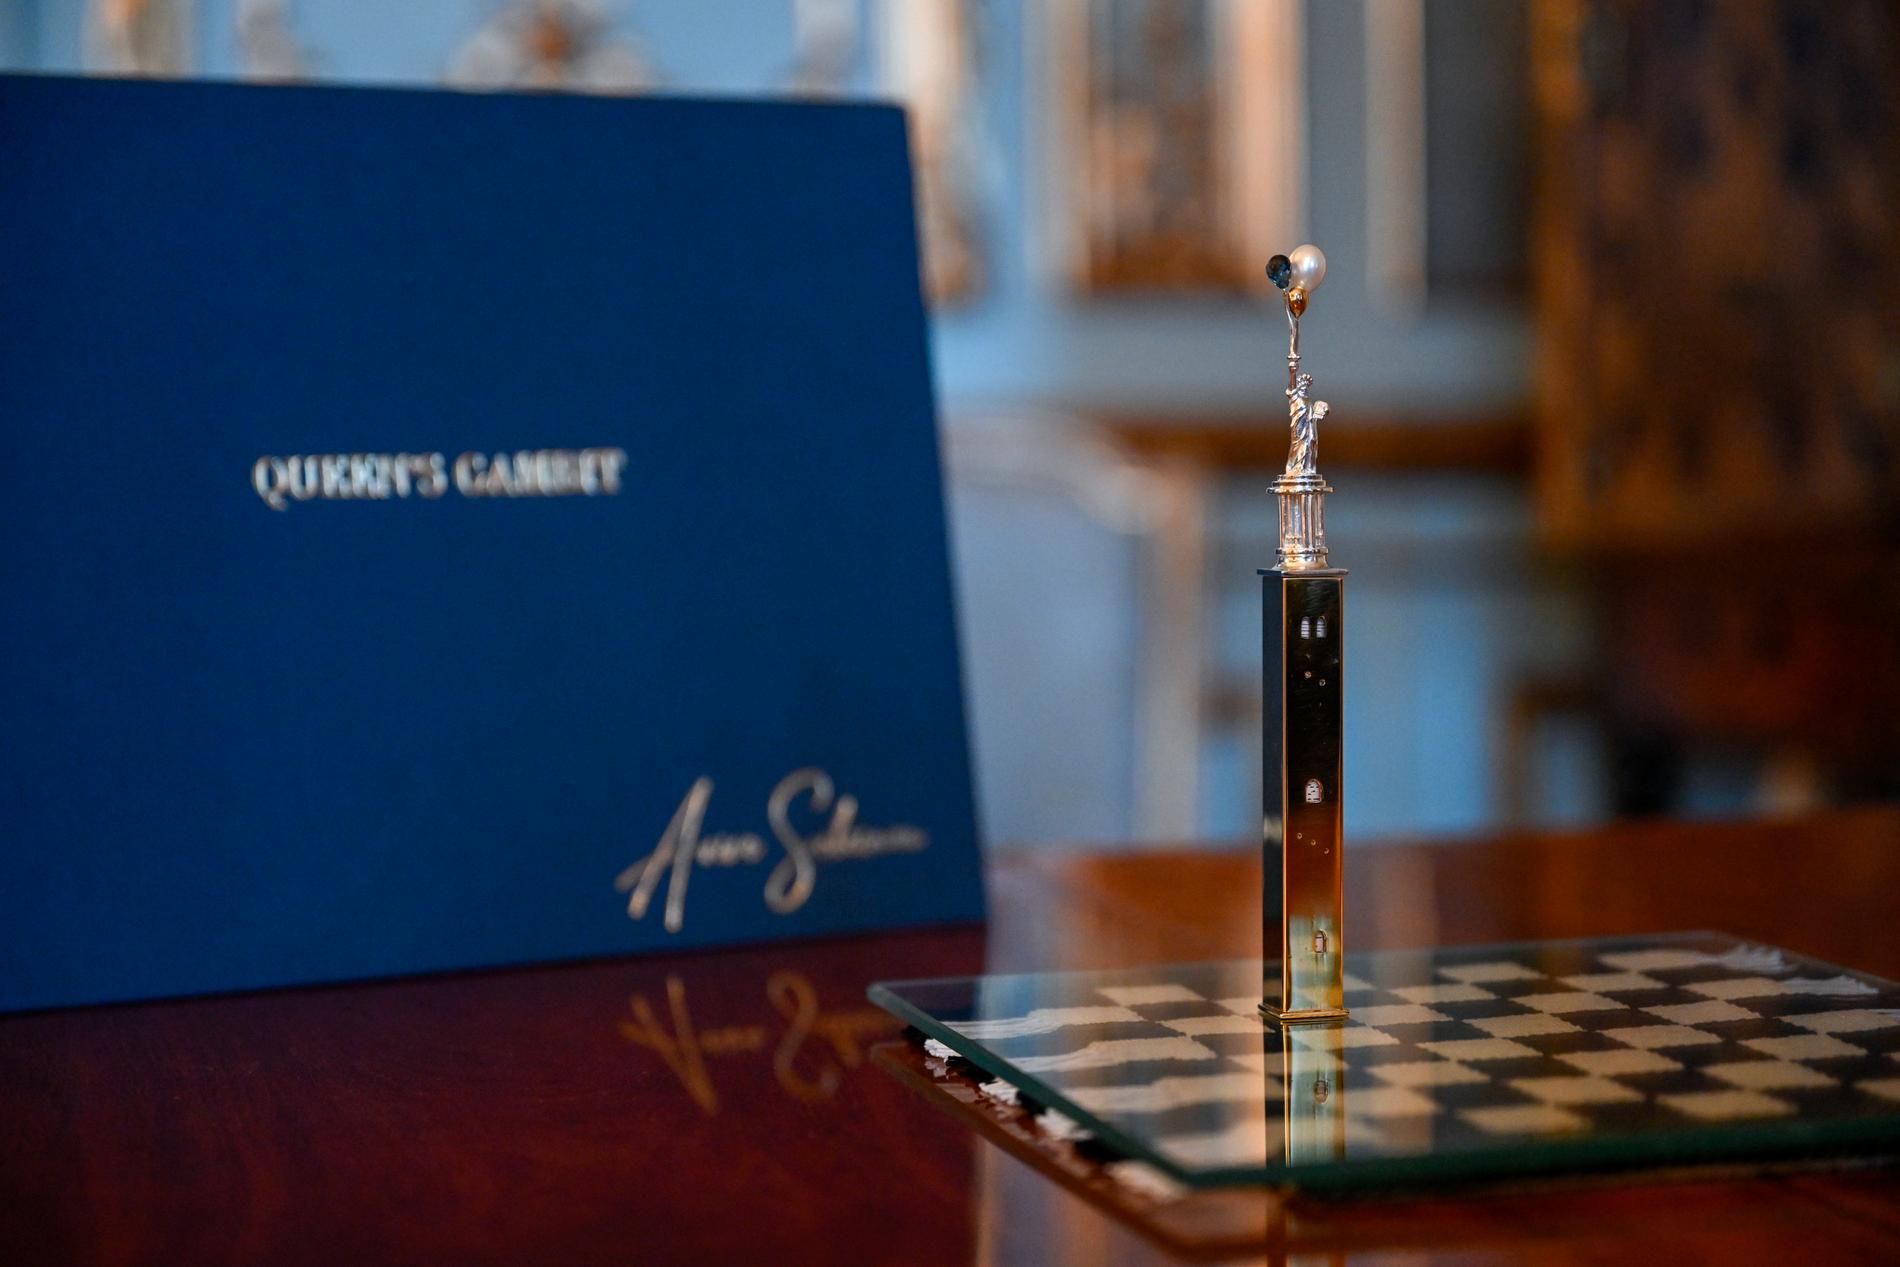 Bordssmycket ”Queen’s Gambit” består av en schackväv skapad av Åsa Pärson och en silverpjäs skapad av ädelsmeden och konstnären Aviva Scheimans.